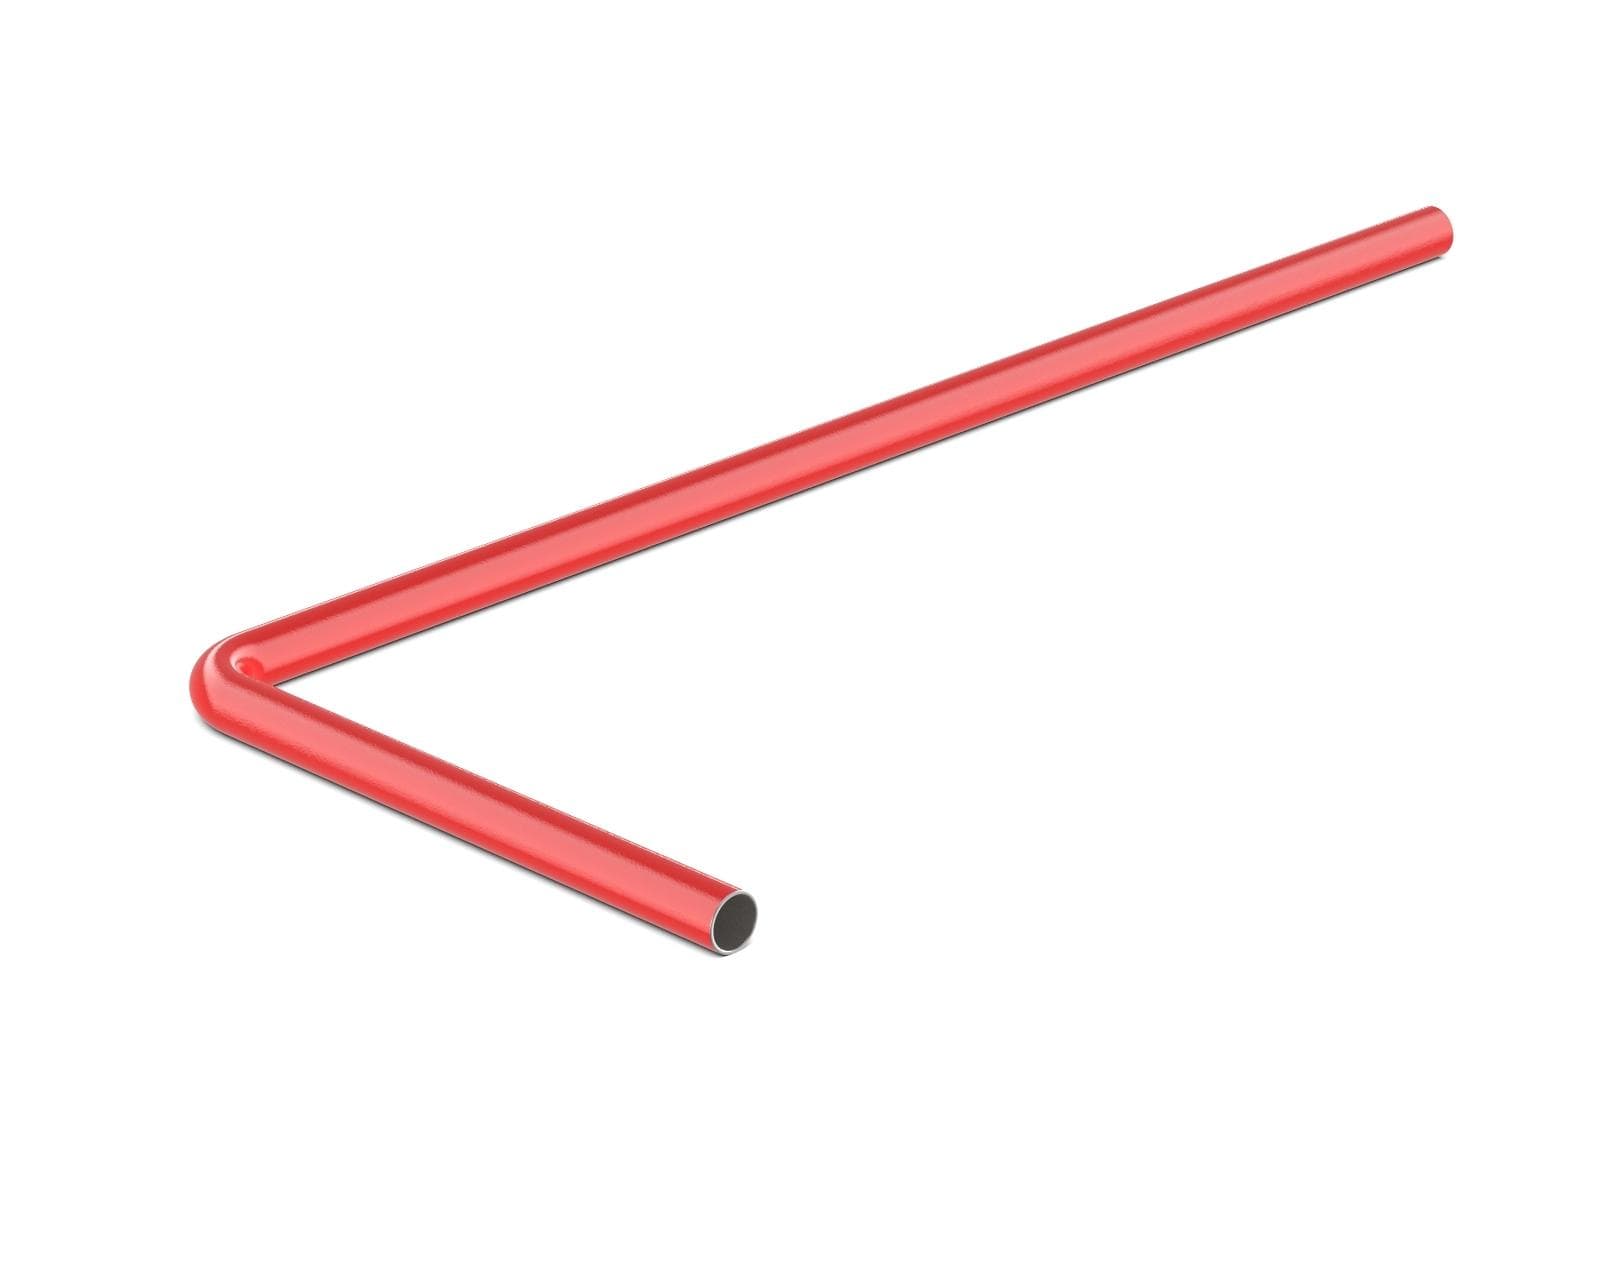 PrimoChill SX Pre-Bent 1/2in. OD Rigid Copper Tube - Razor Red